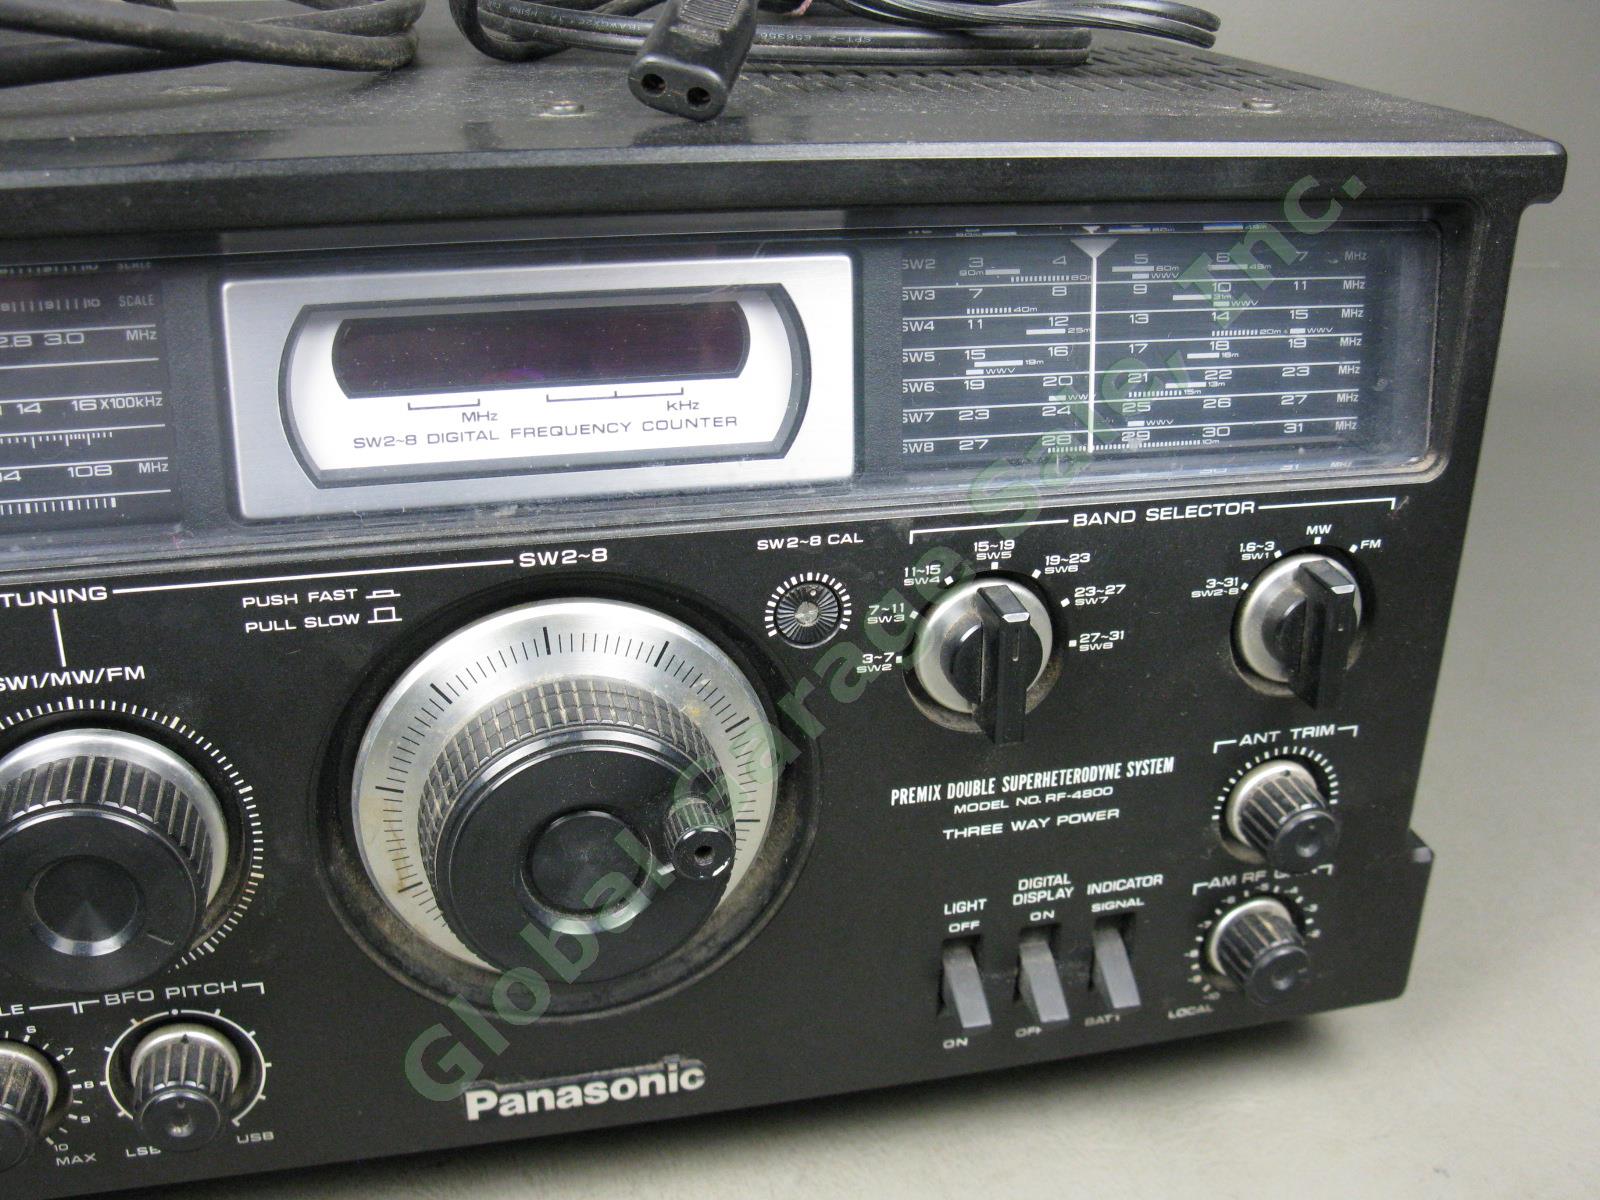 Panasonic RF-4800 FM-AM-SSB-CW 10-Band Shortwave Radio Communication Receiver NR 2